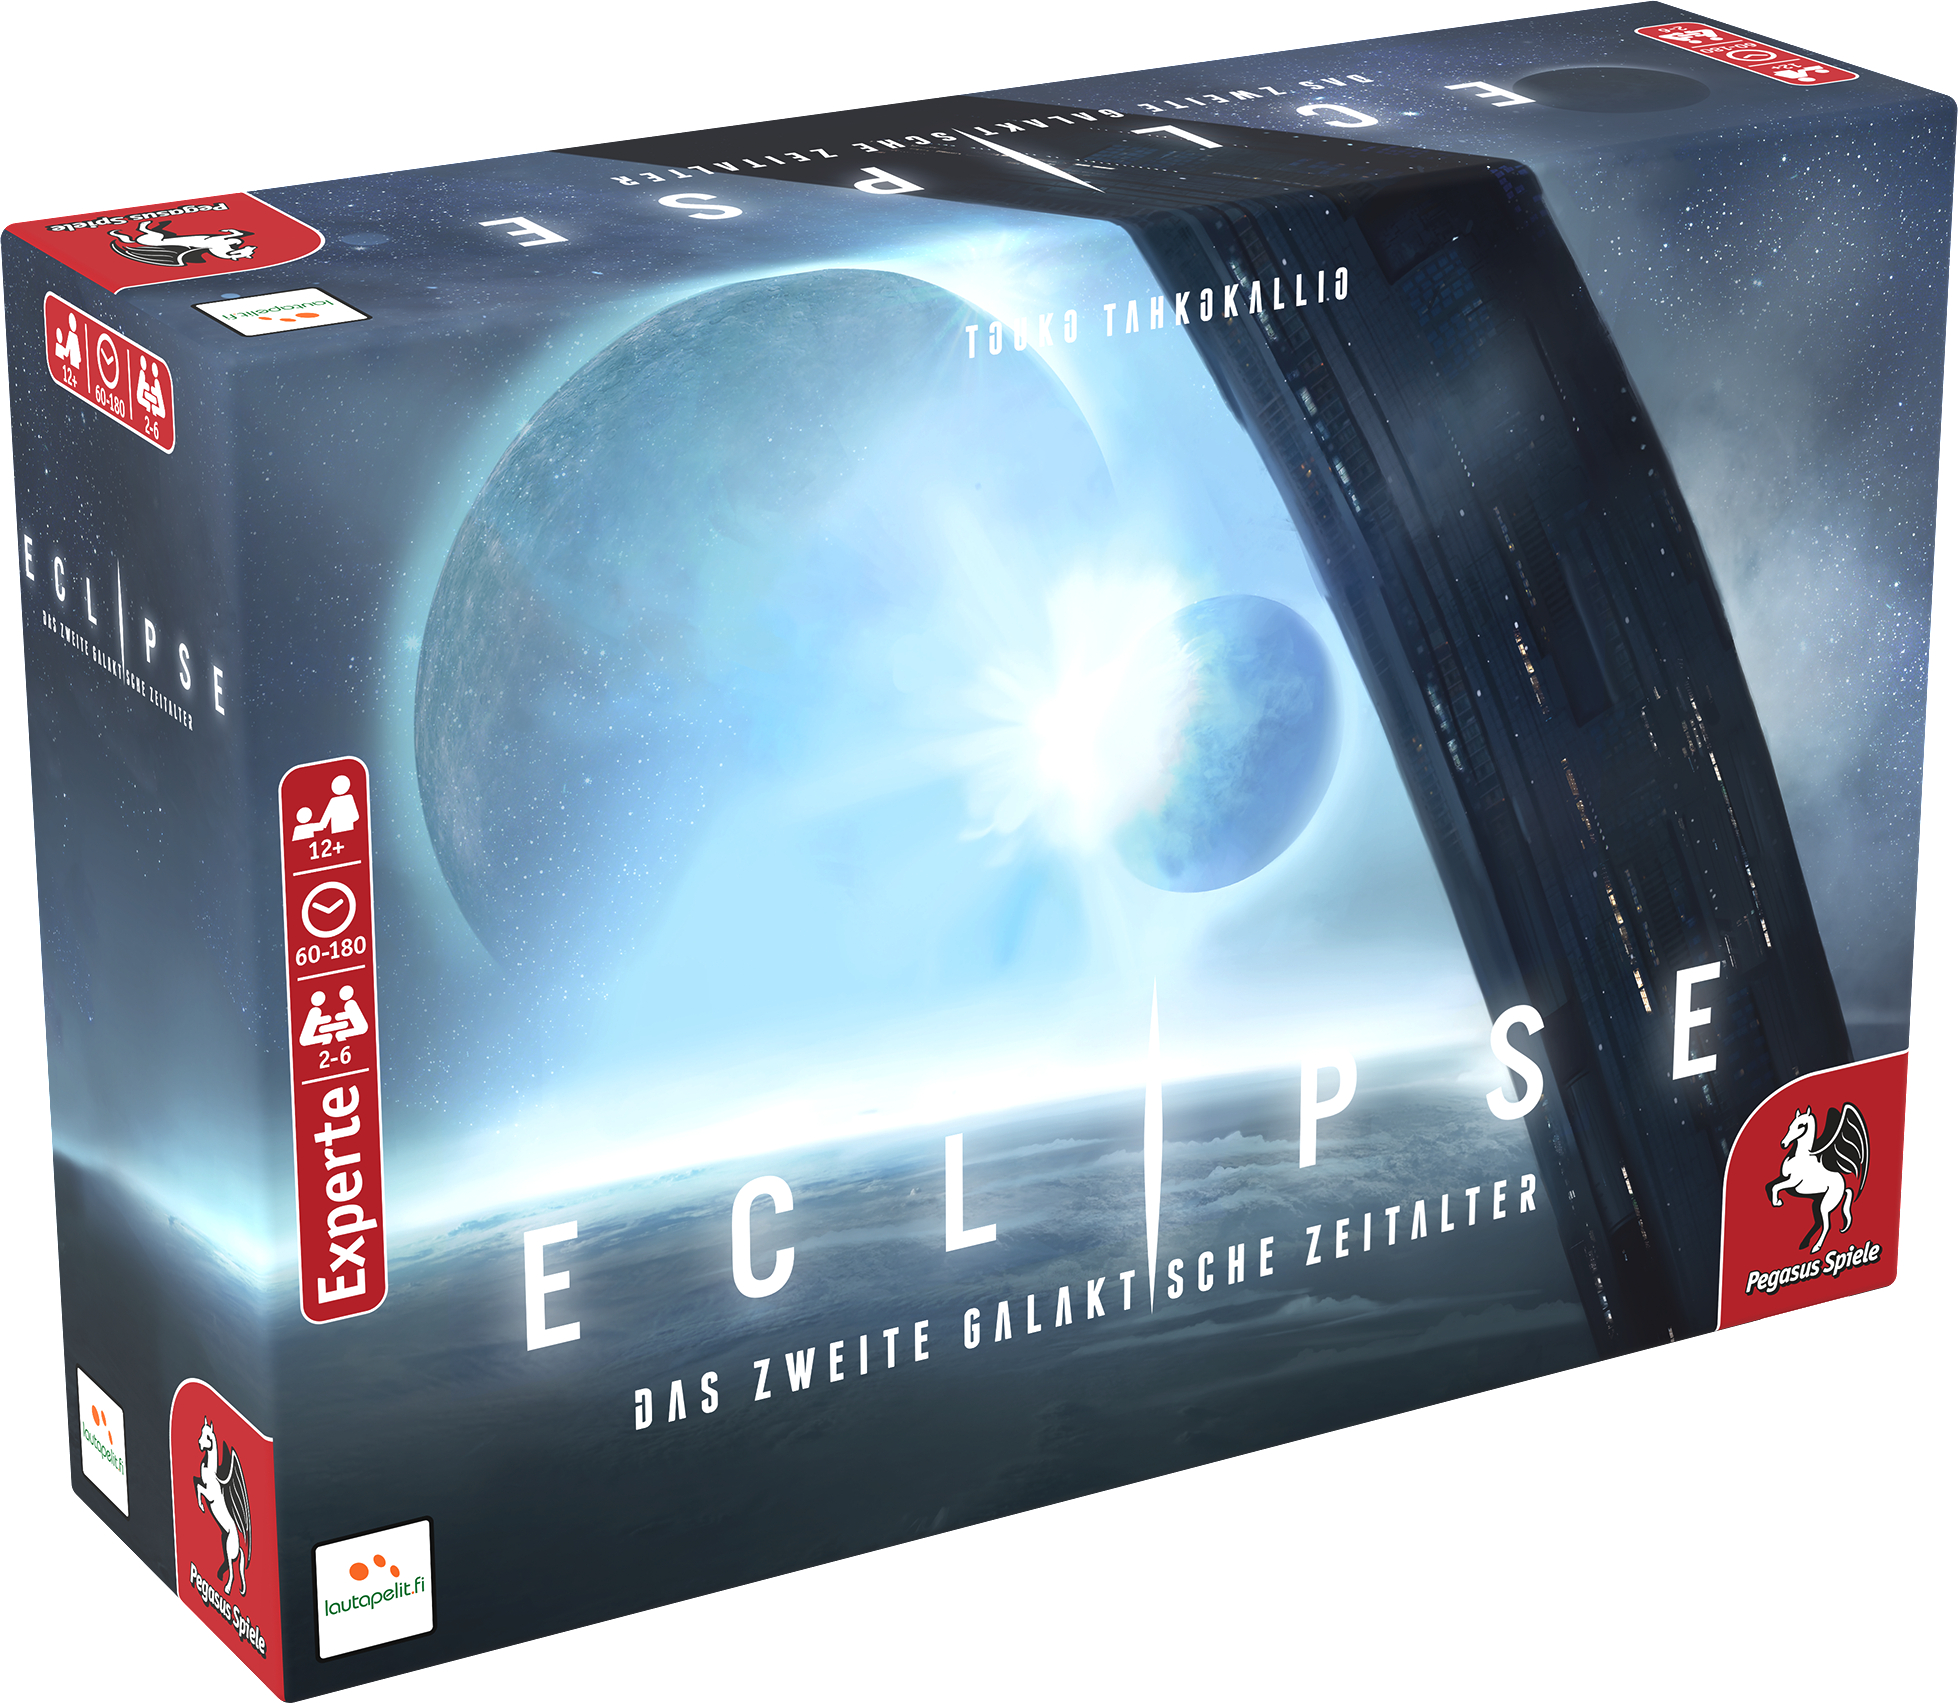 Mehrfarbig SPIELE (Lautapelit) galaktische Zeitalter Das Brettspiel zweite – PEGASUS Eclipse